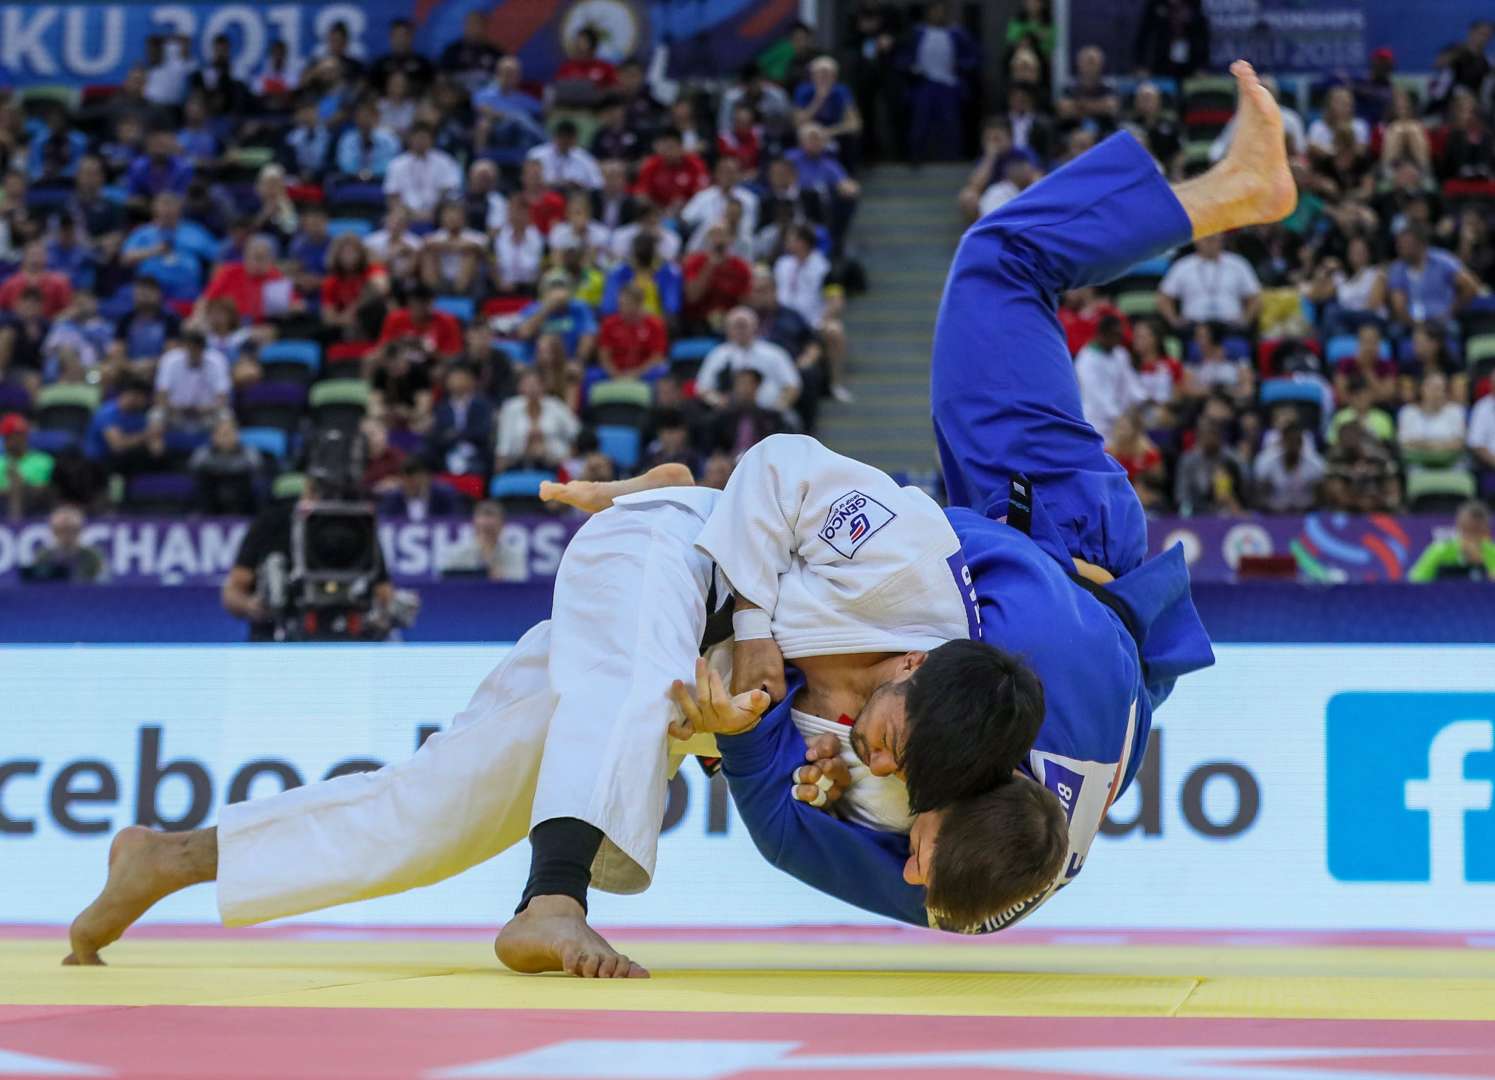 judo most effective martial art